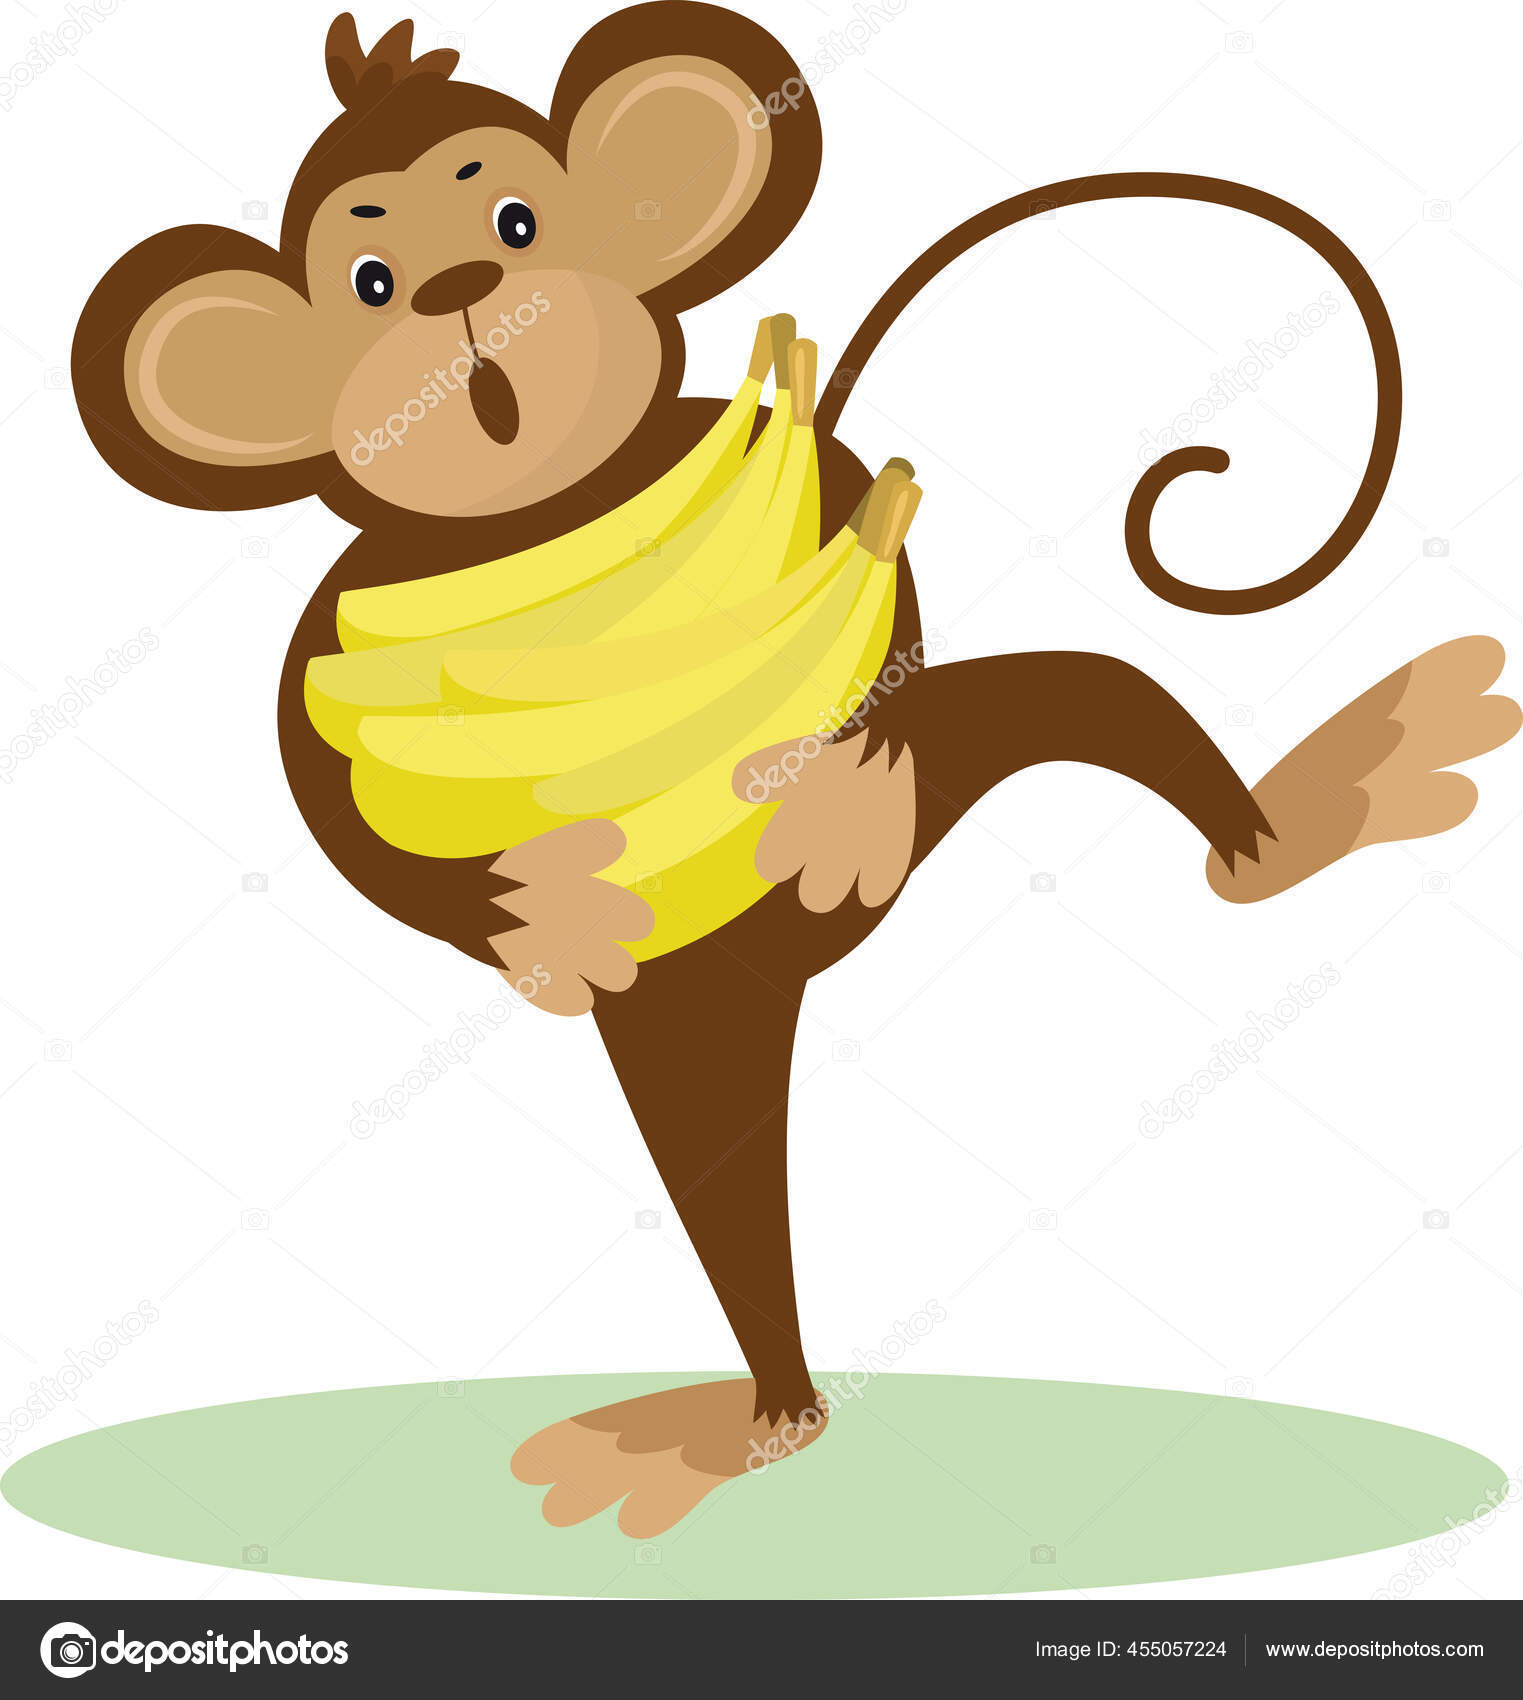 Gambar Monyet Kartun Vektor